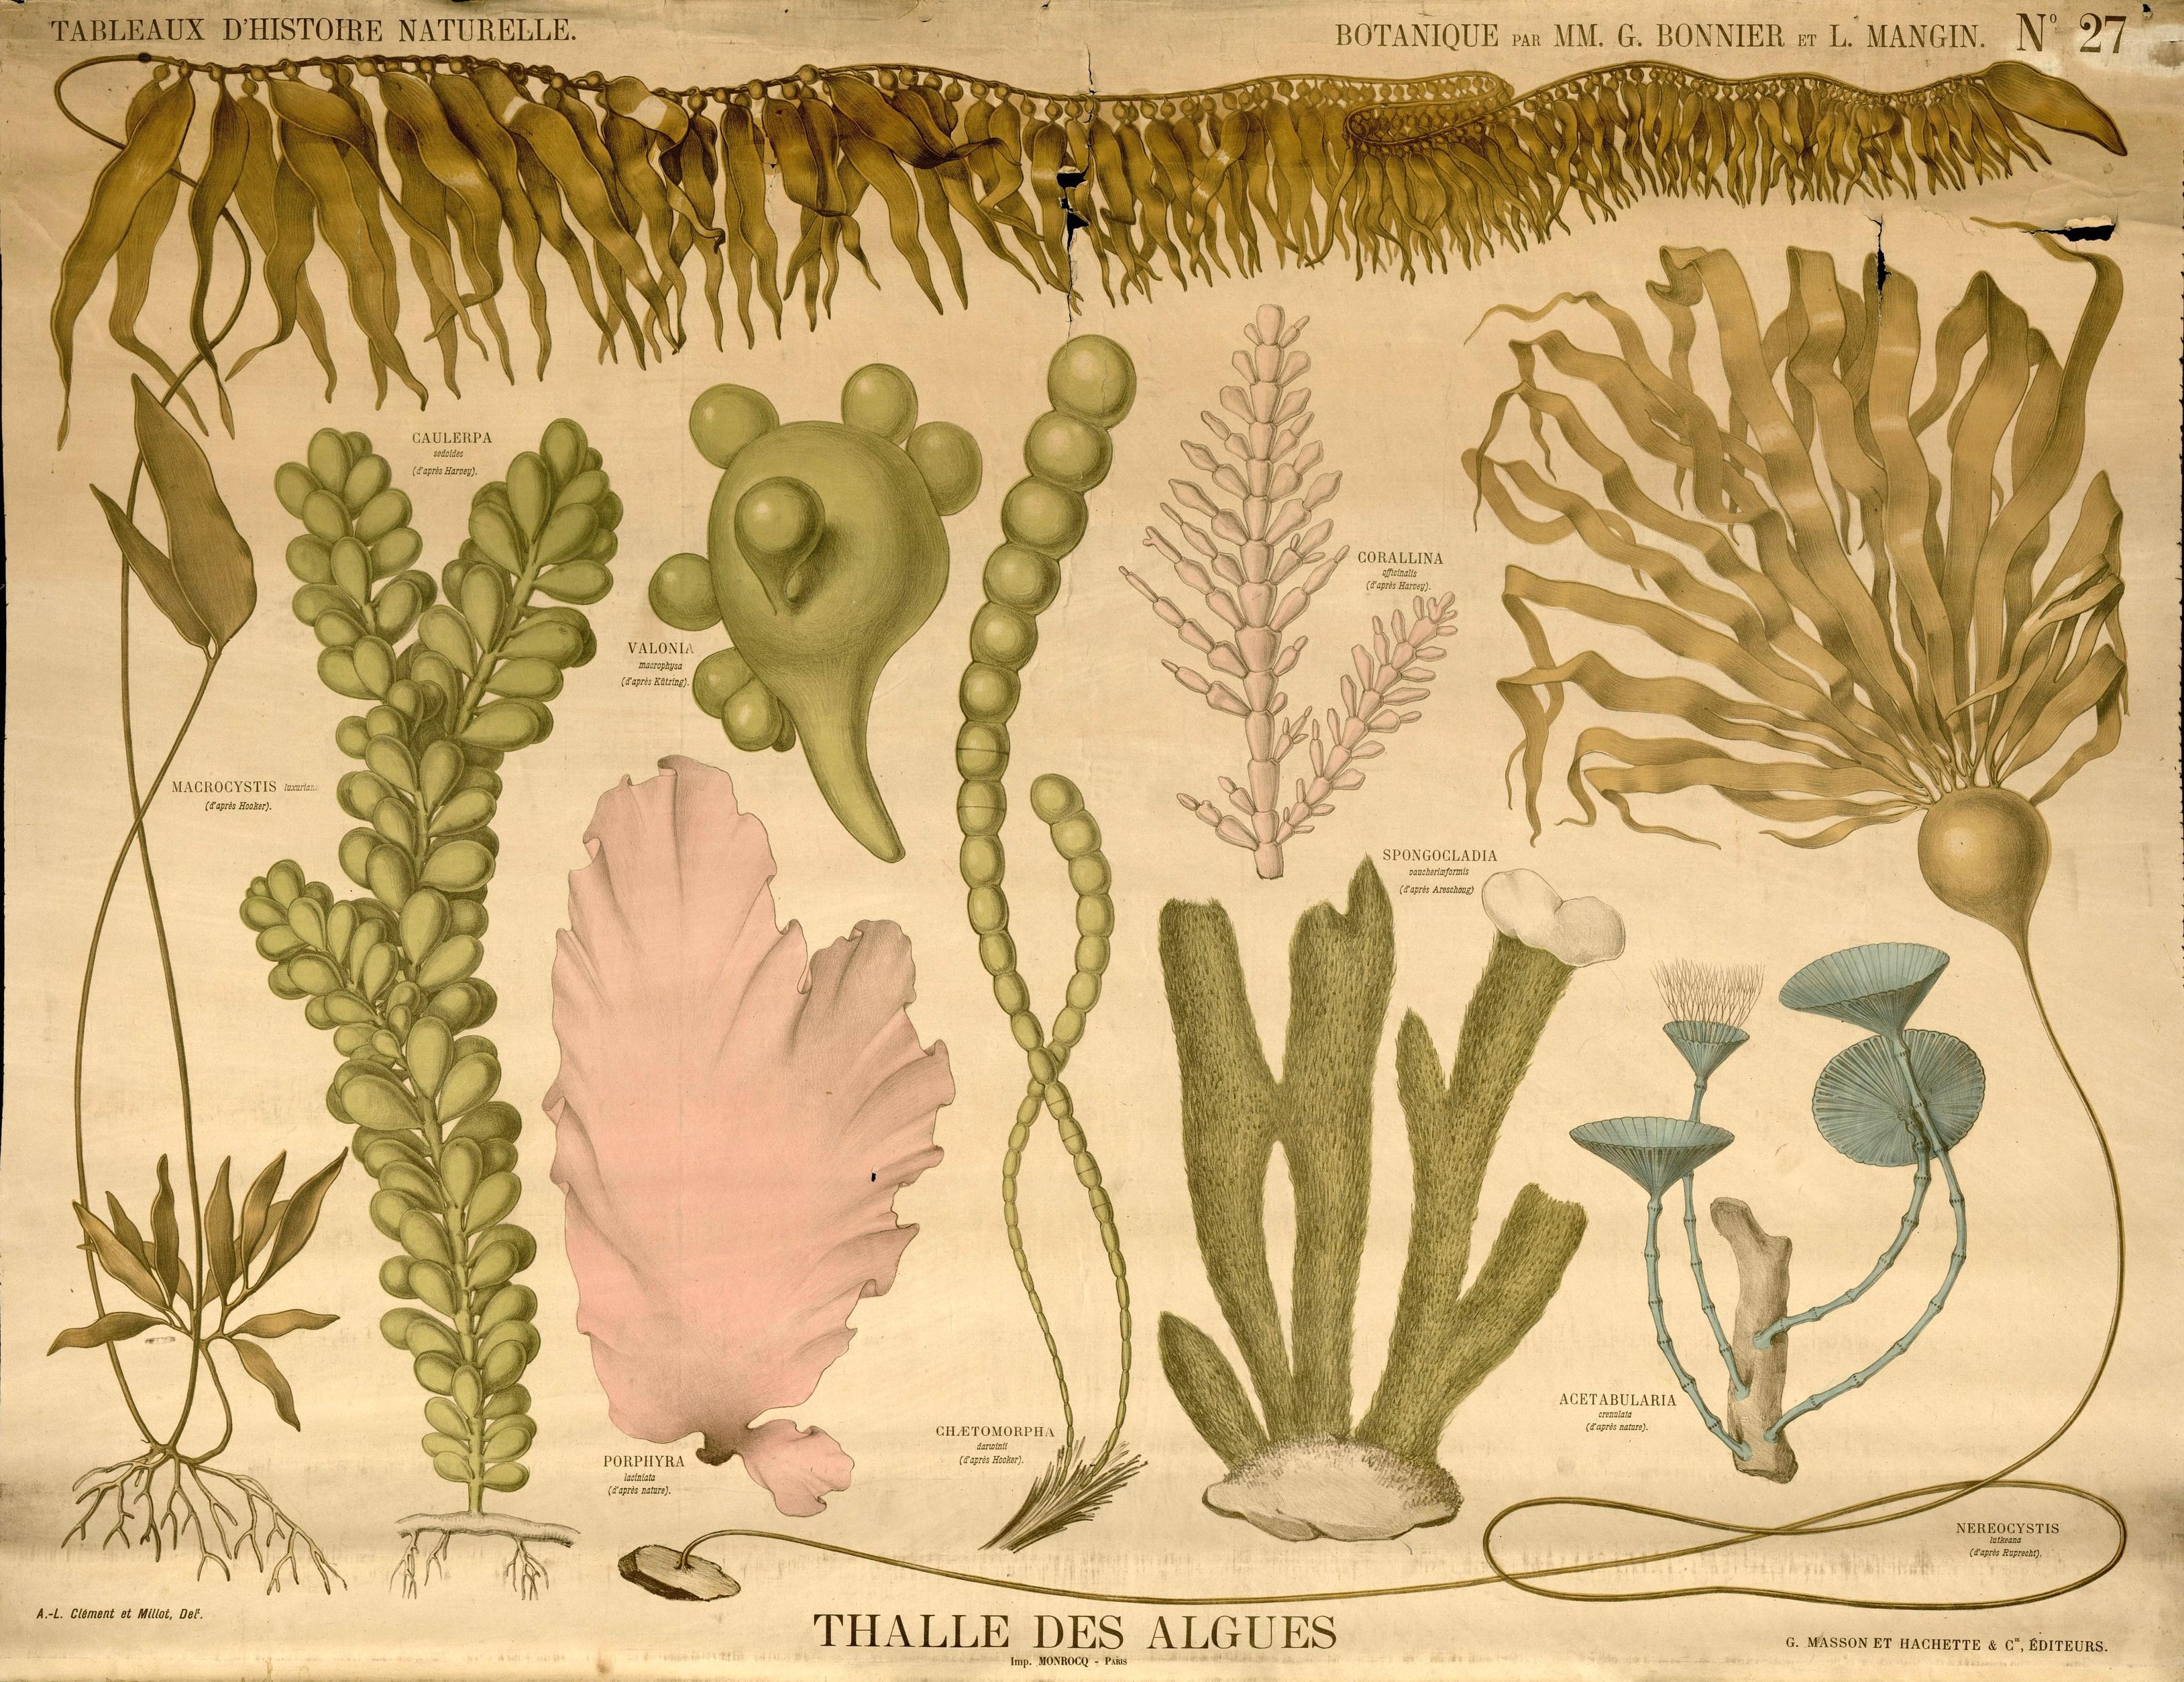 Résultat de recherche d'images pour "planche botaniques"